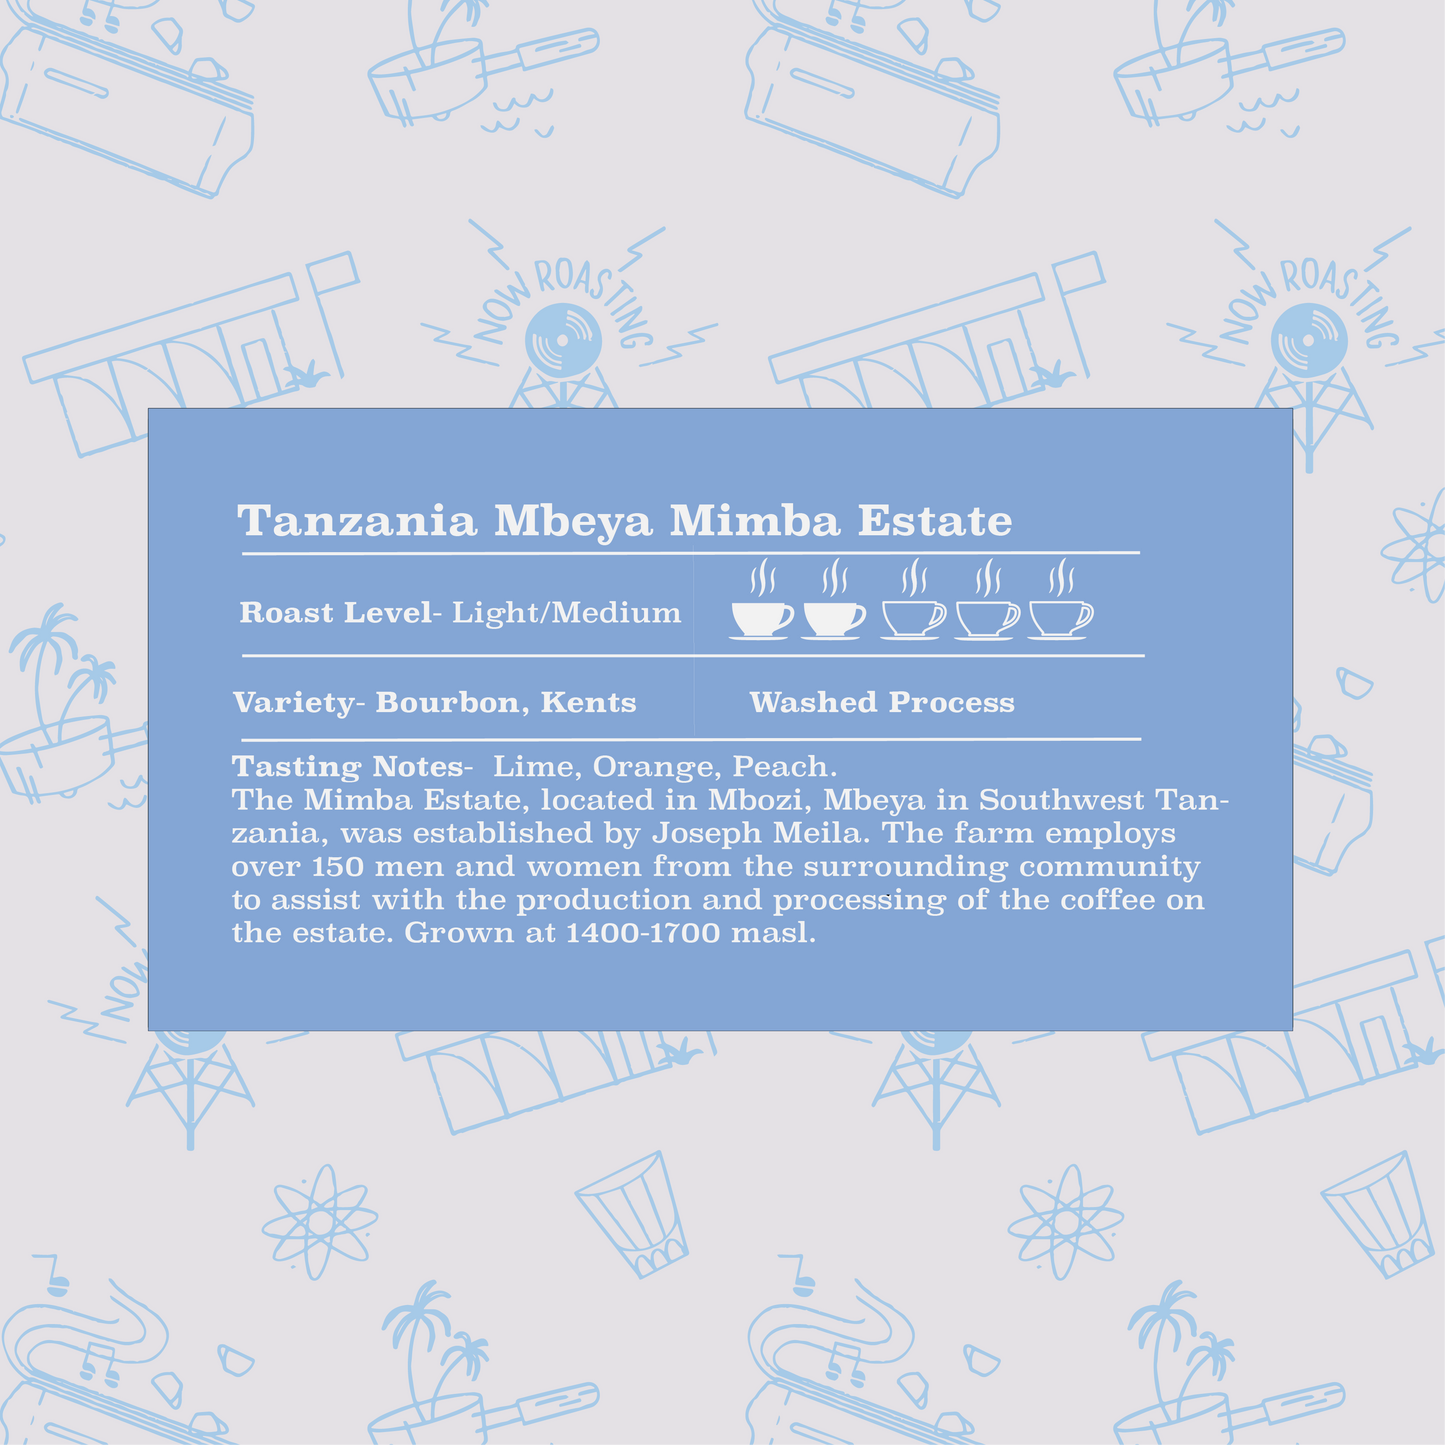 Tanzania Mbeya-Mamba Estate